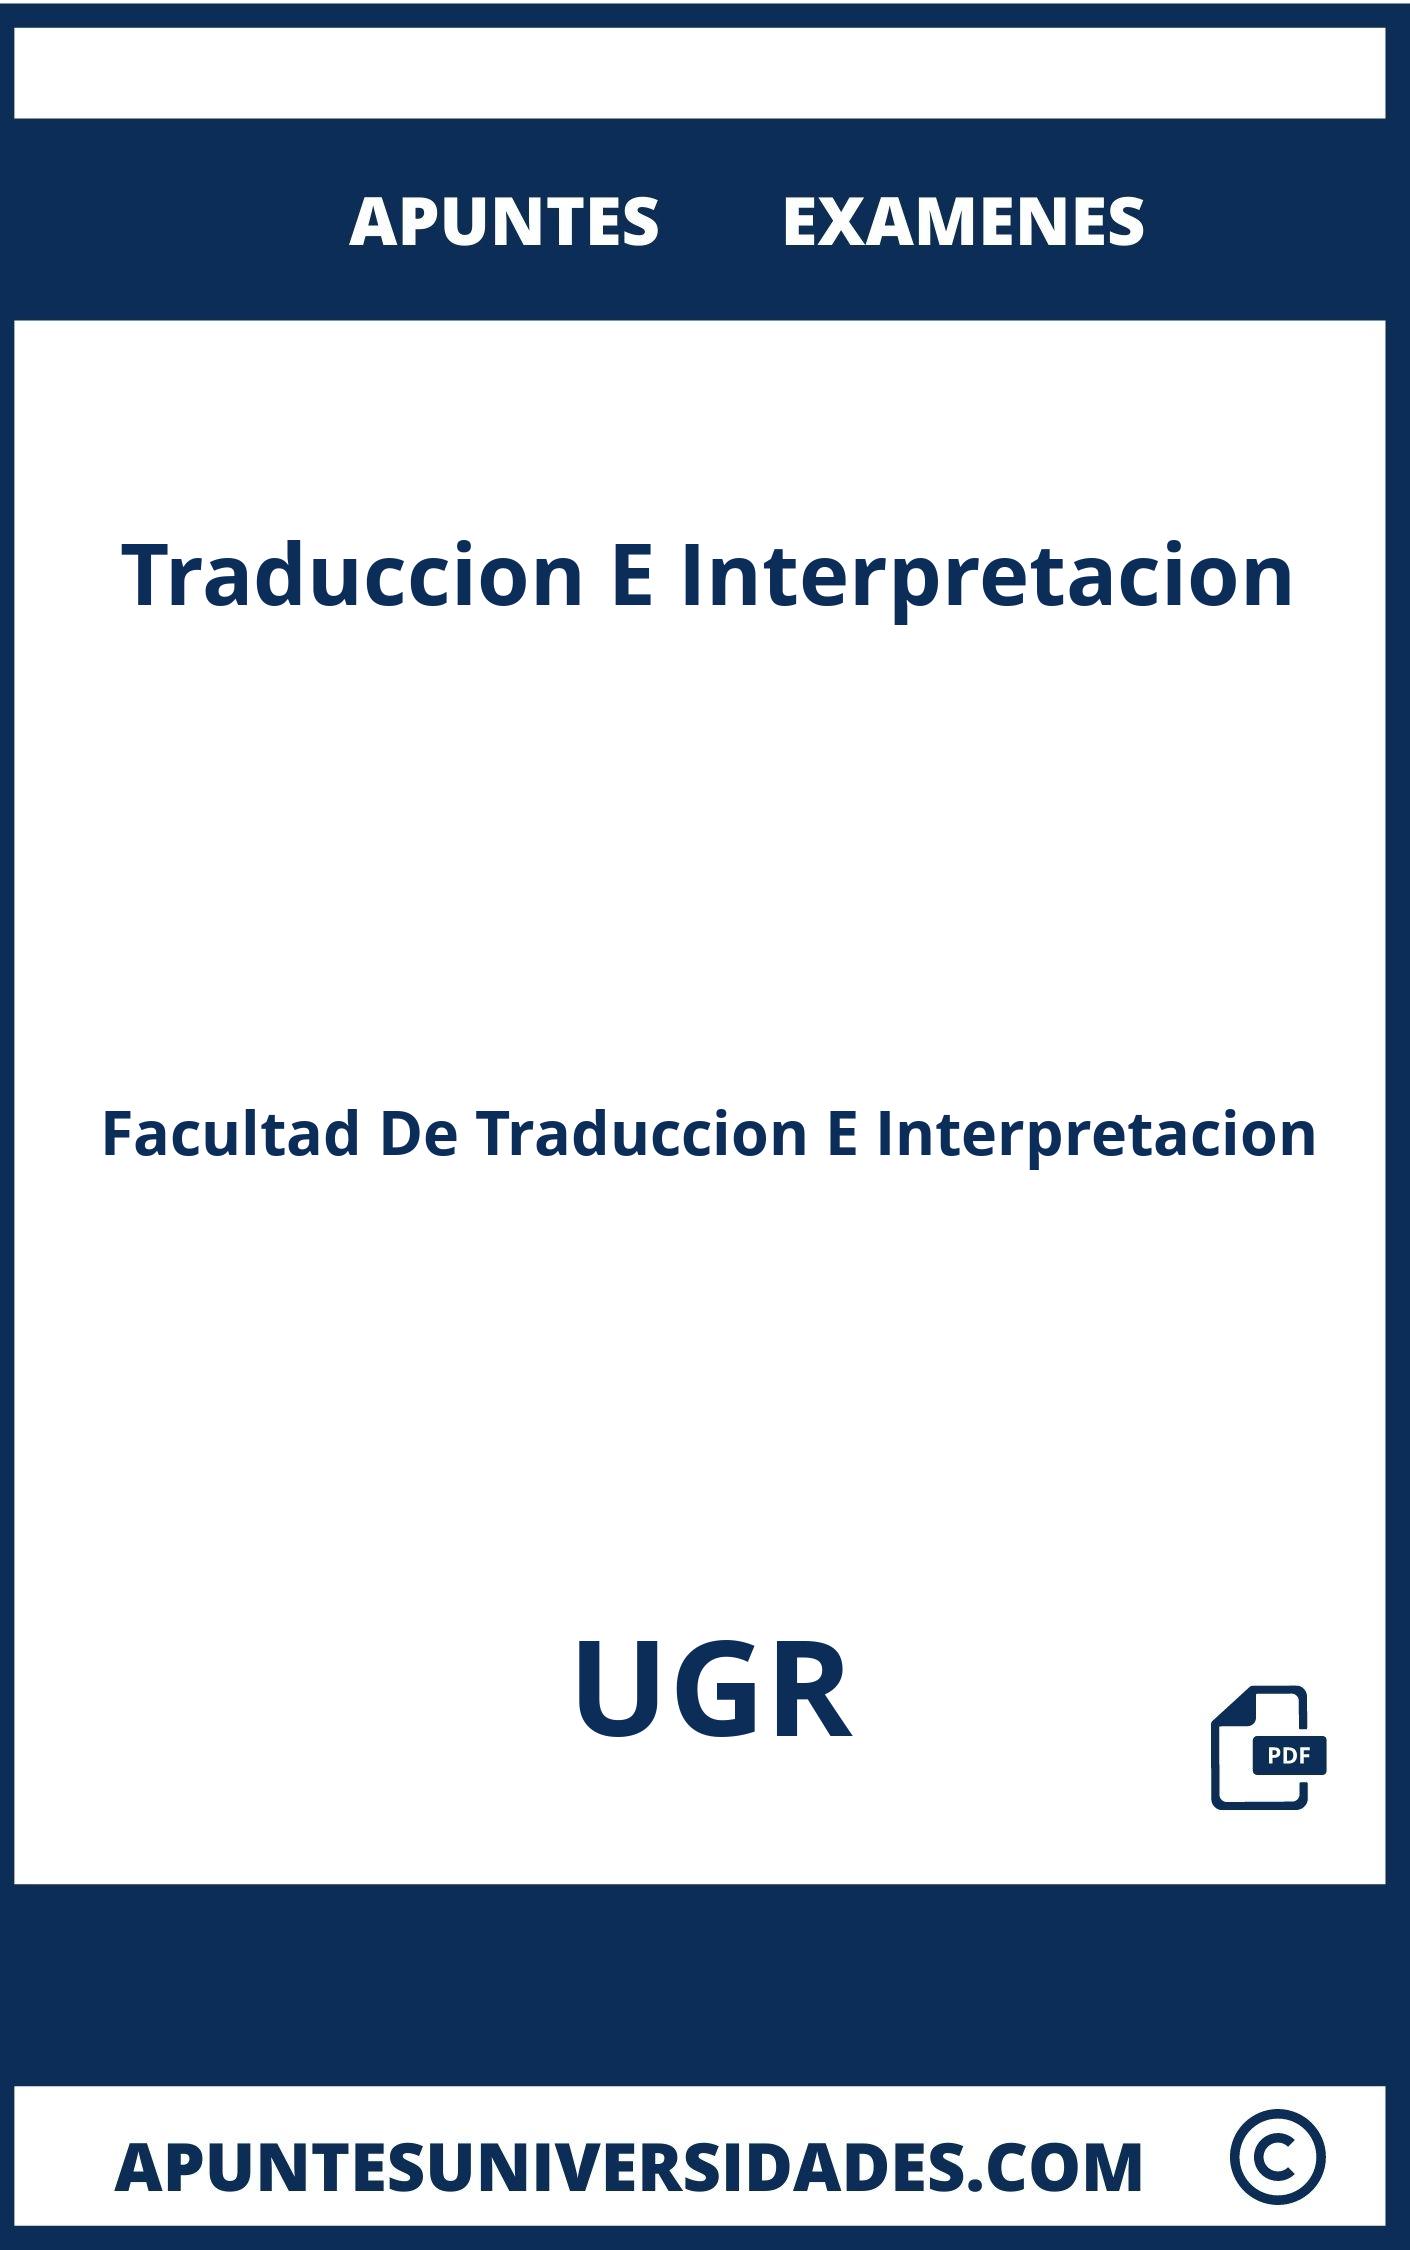 Apuntes y Examenes de Traduccion E Interpretacion UGR